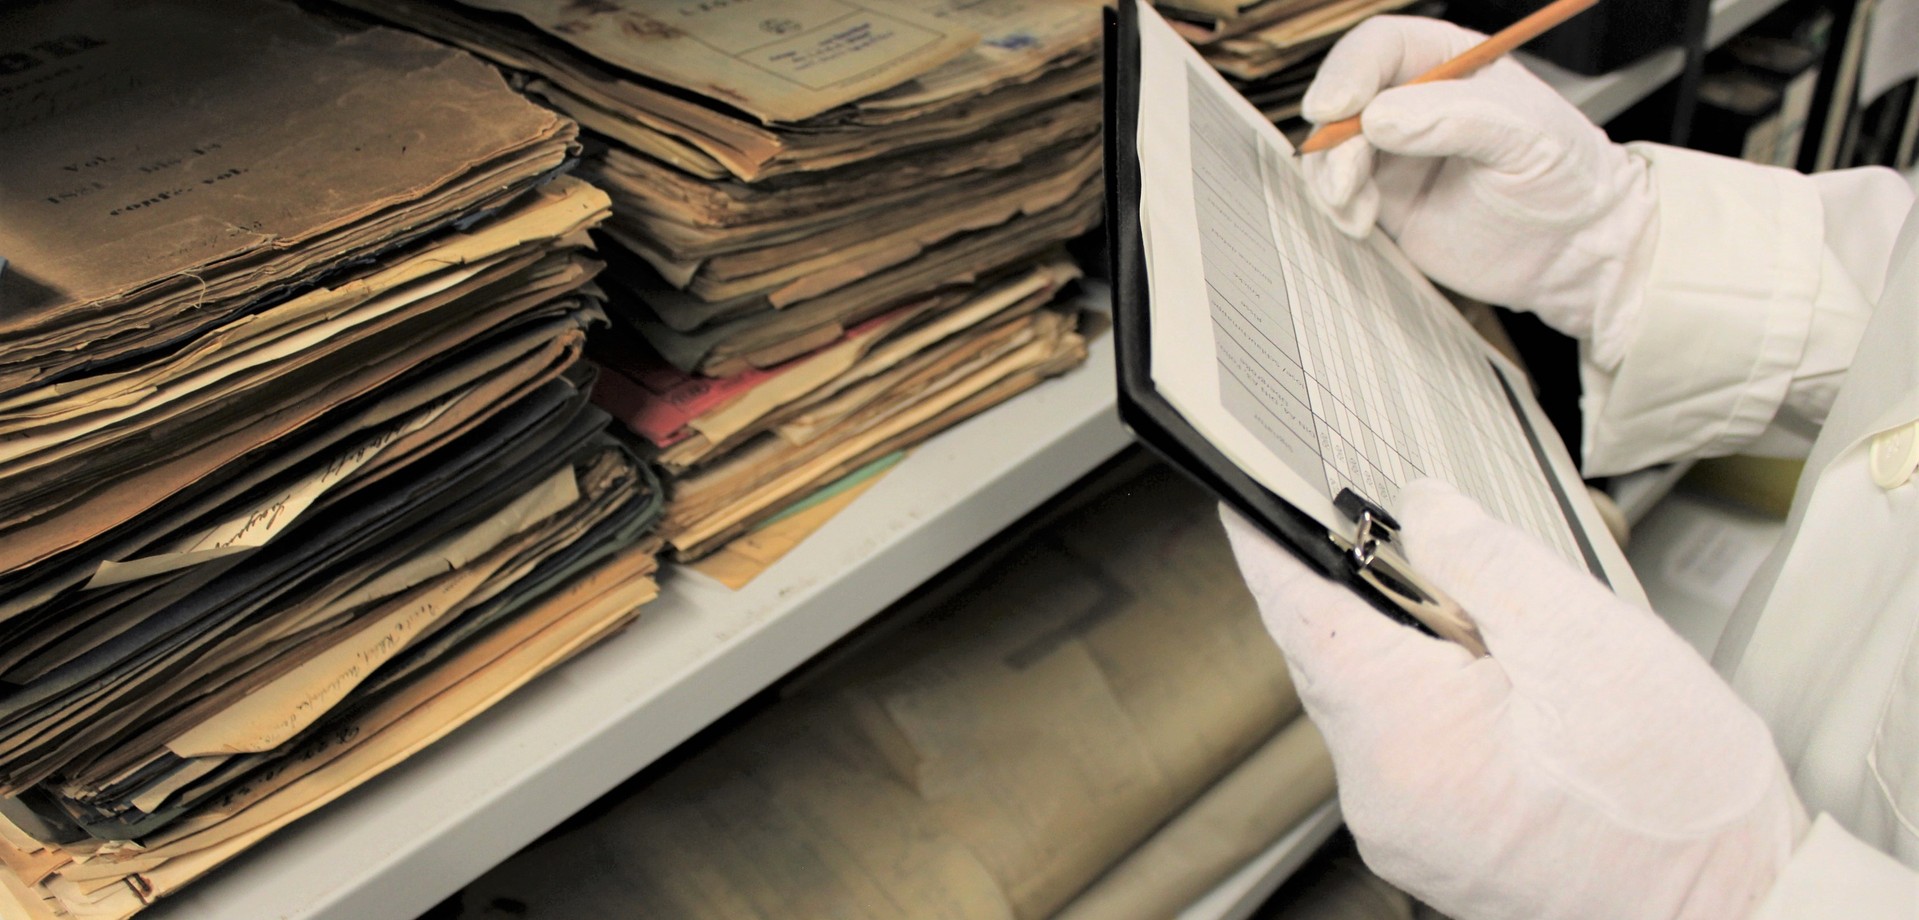 Alte Akten und Dokumente in einem Regal. Davor sieht man ein Klemmbrett, das von einer Person mit weißen Spezialhandschuhen zur Arbeit mit alten Dokumenten festgehalten wird.